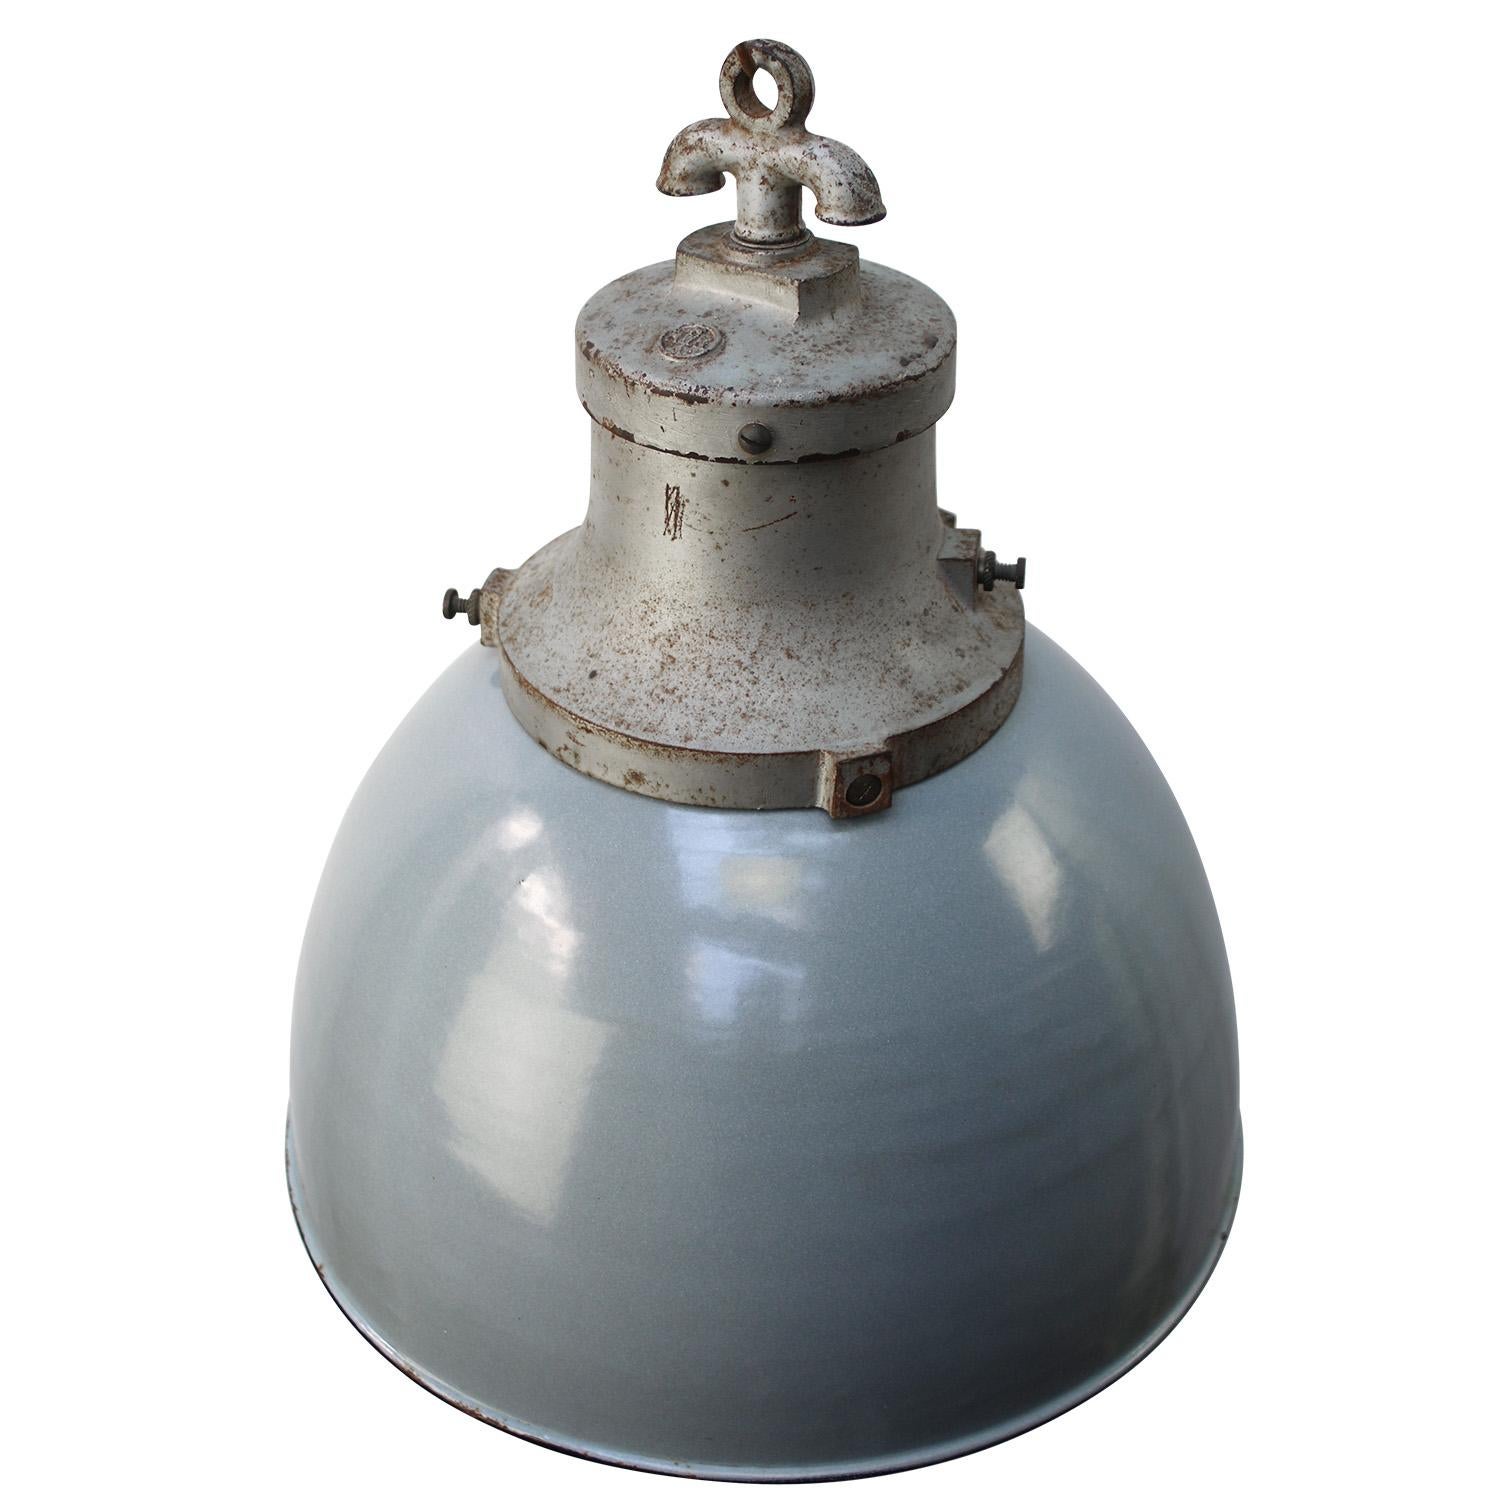 Rare et ancienne lampe d'usine de HWK
Émail gris avec dessus en fonte grise
Intérieur blanc

Poids : 5,40 kg / 11,9 lb

Le prix est fixé par article individuel. Toutes les lampes ont été rendues conformes aux normes internationales pour les ampoules